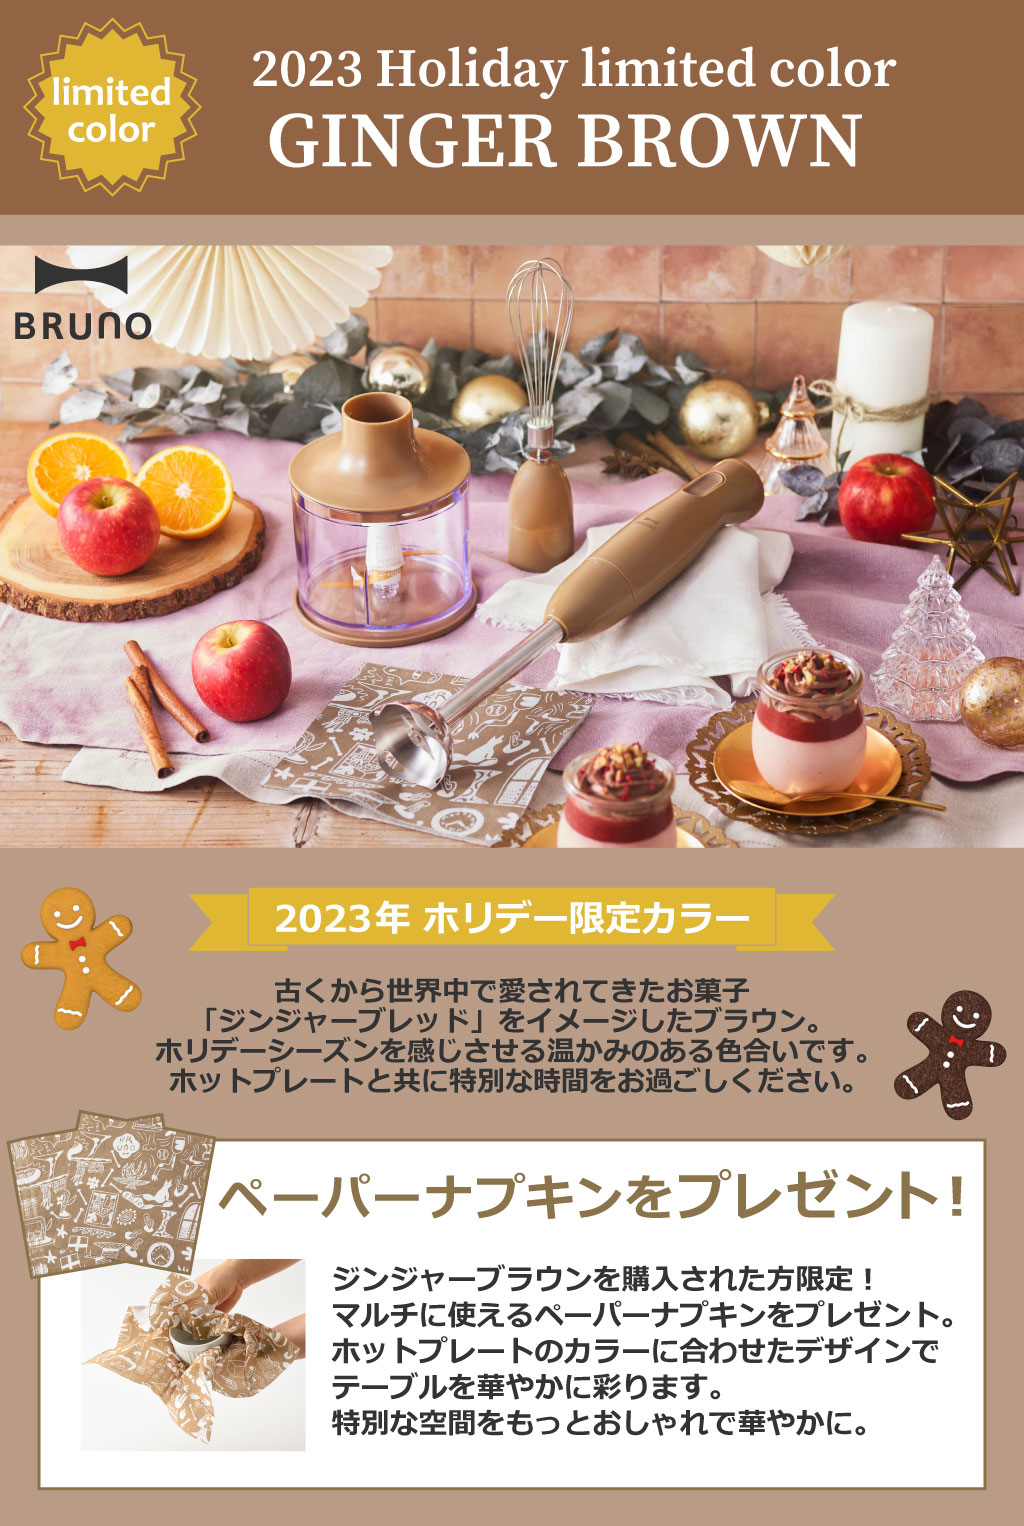 ブルーノ BRUNO マルチスティックブレンダー | キッチン家電・ブレンダー | モノギャラリー